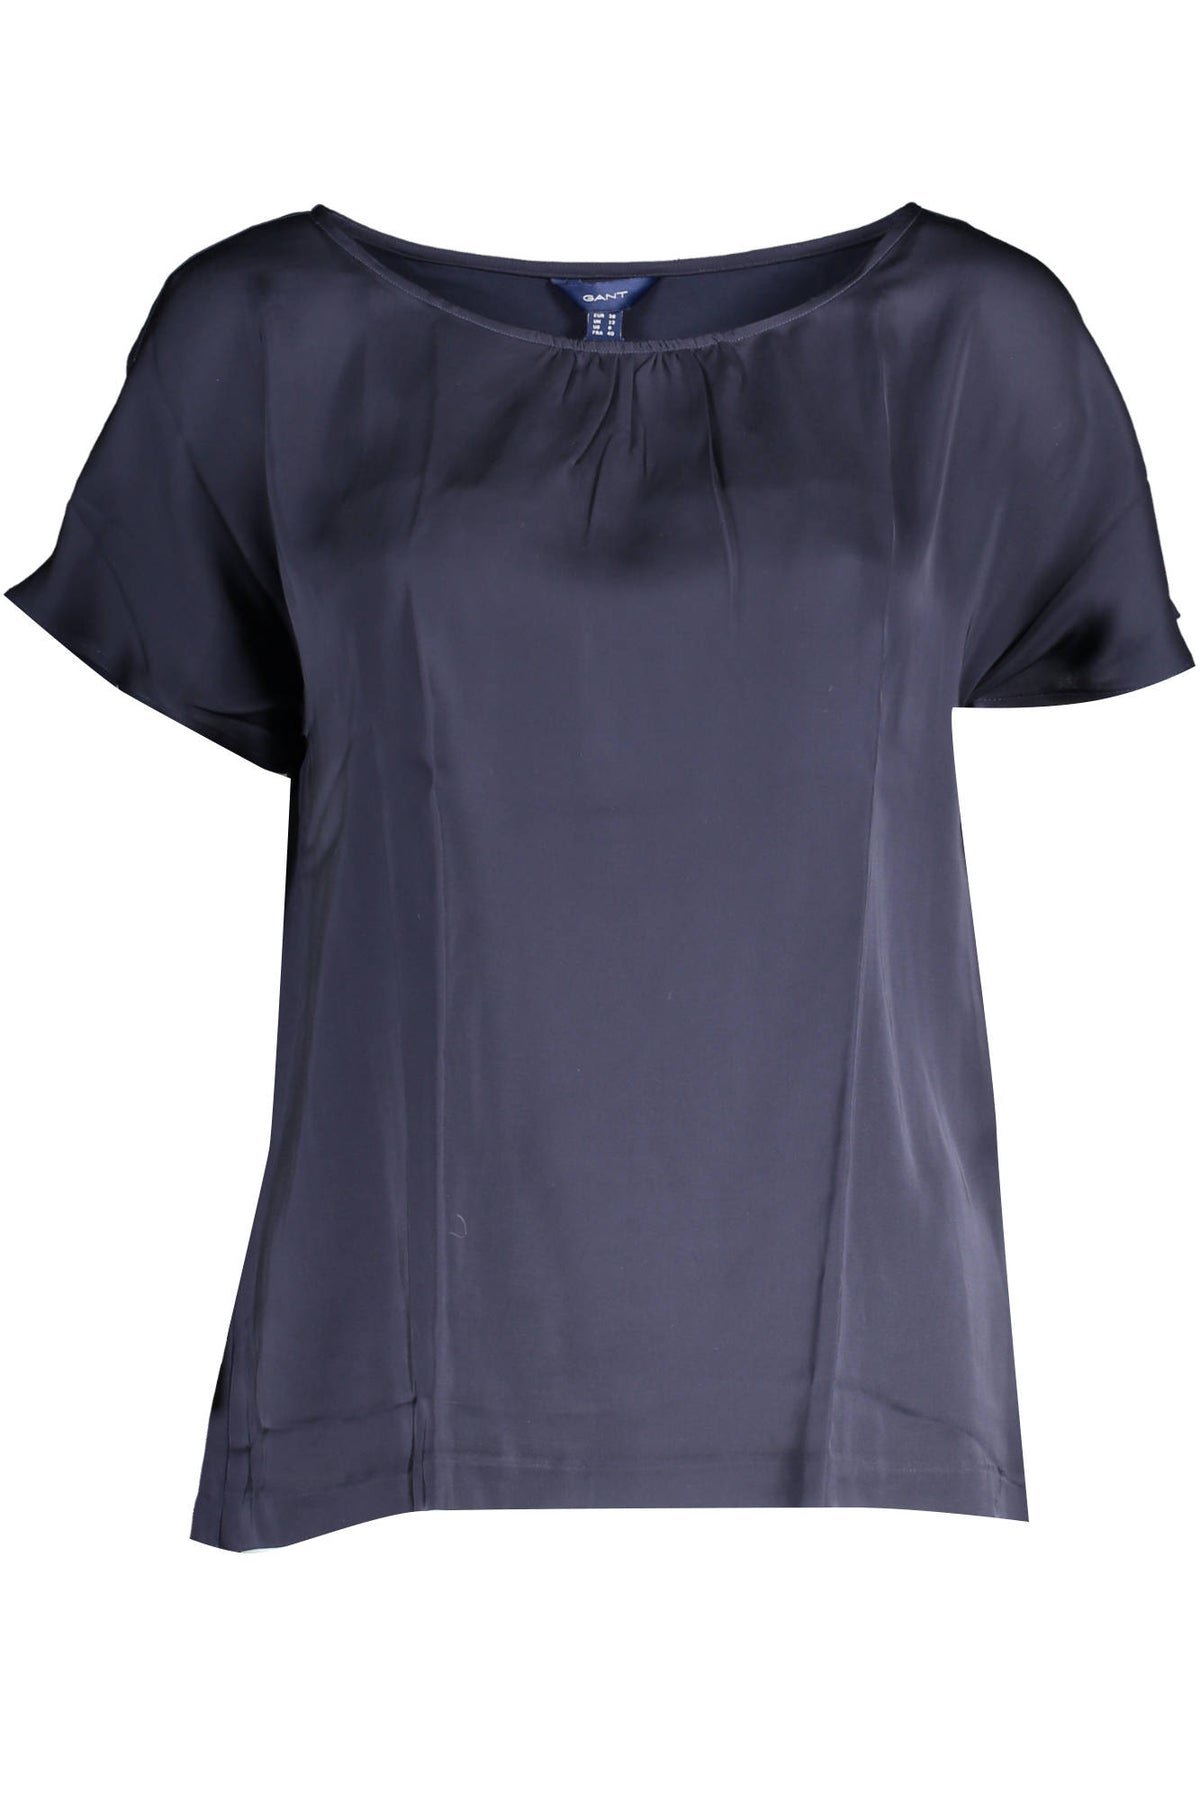 Gant Damen T-Shirt Sweatshirt mit Rundhalsausschnitt, kurzarm